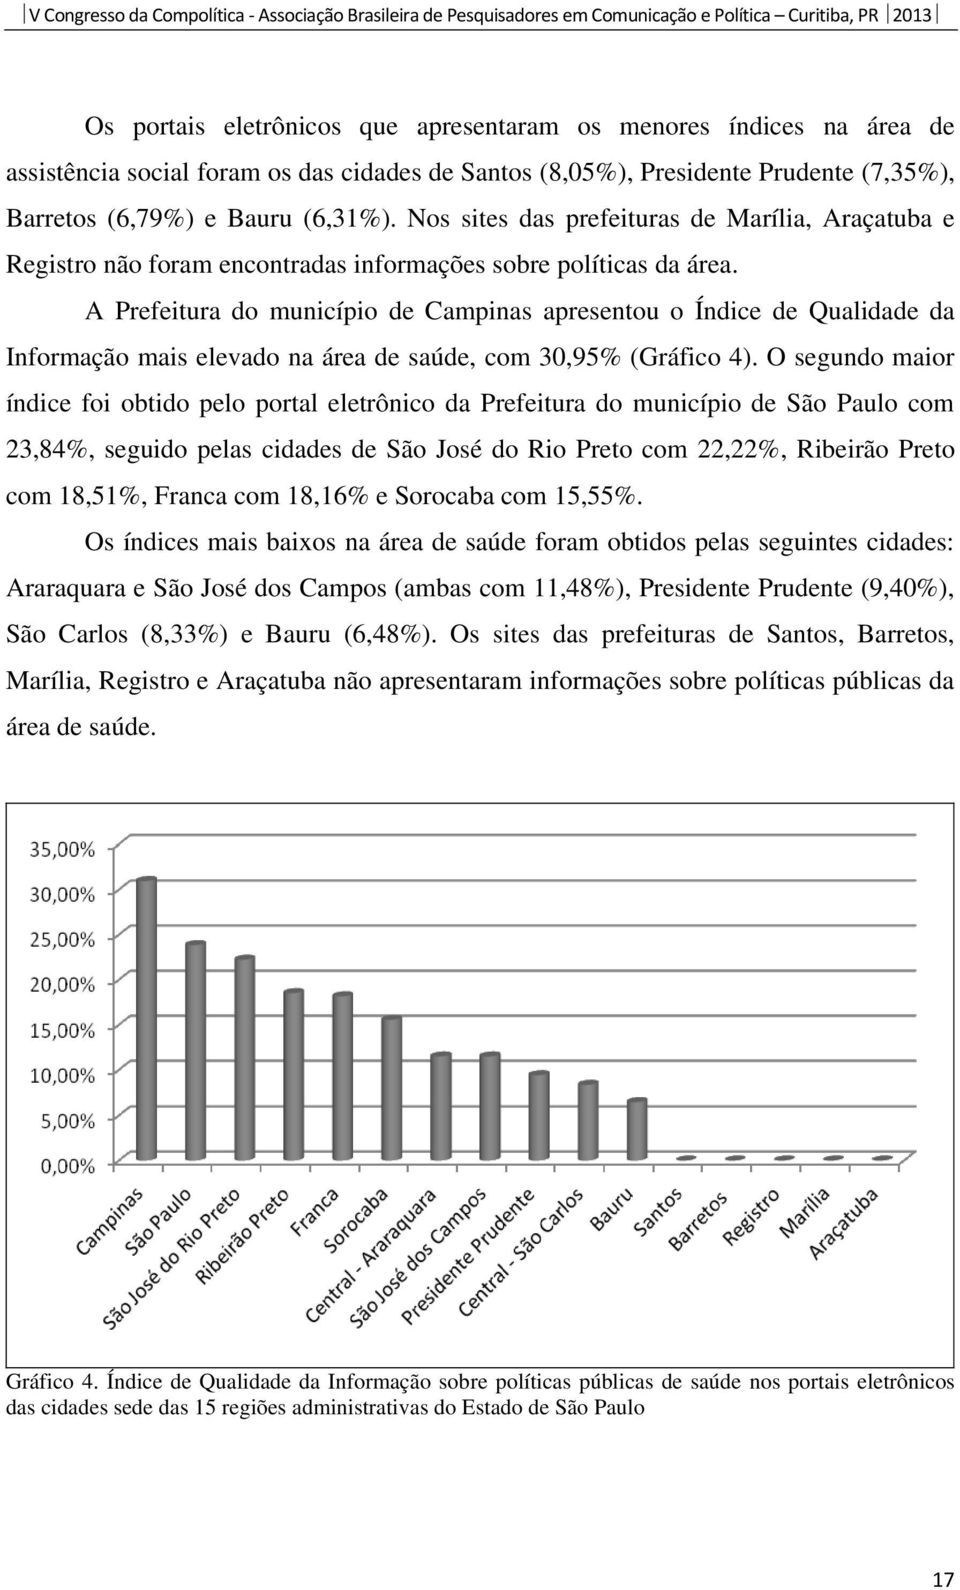 A Prefeitura do município de Campinas apresentou o Índice de Qualidade da Informação mais elevado na área de saúde, com 30,95% (Gráfico 4).